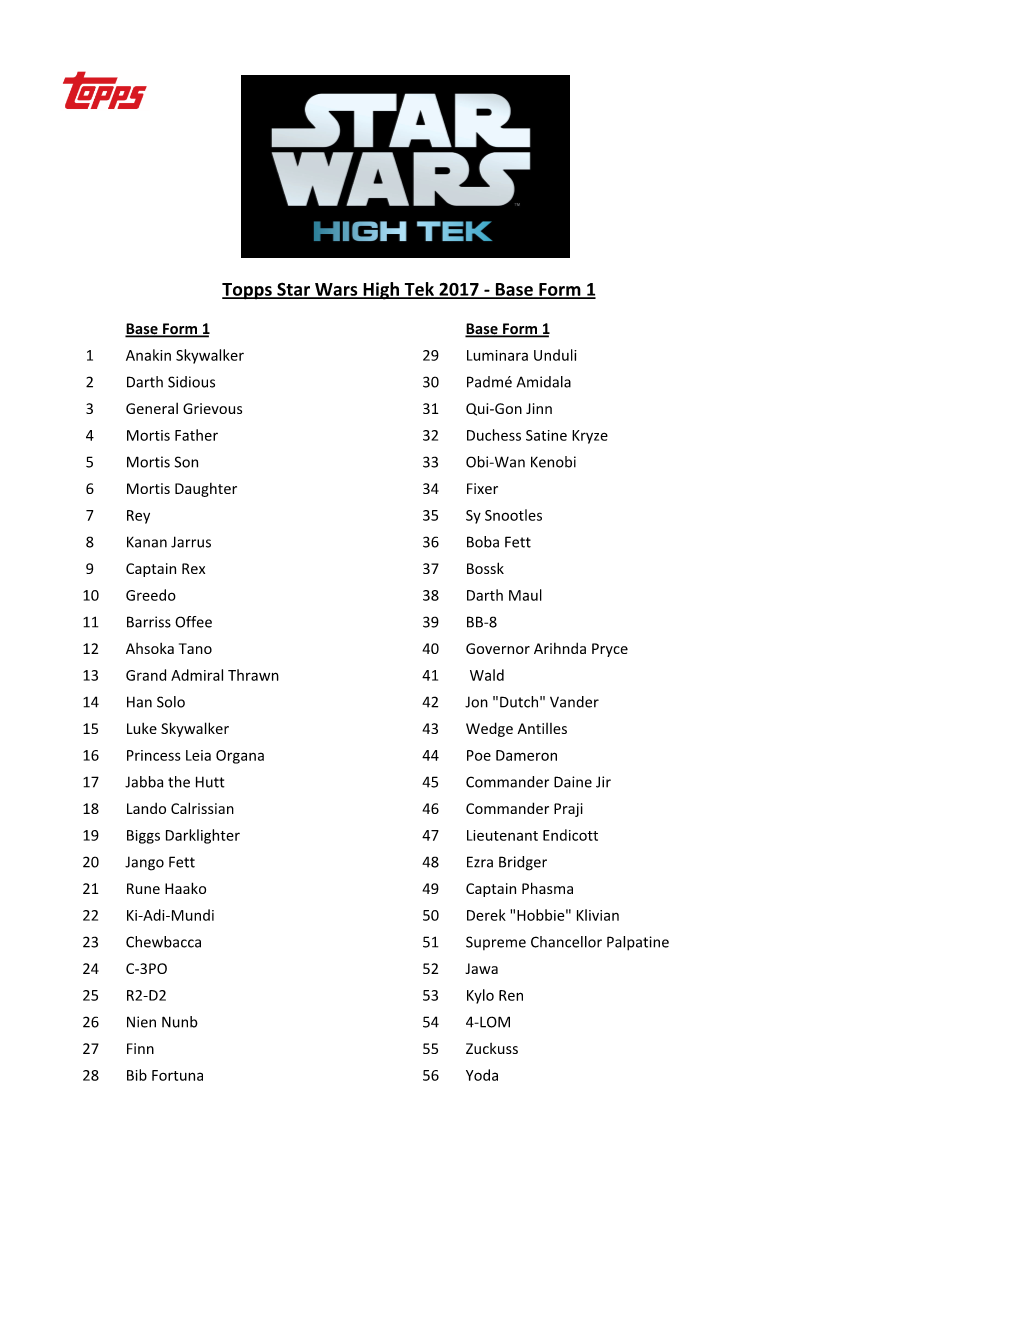 Star Wars High Tek 2017 Checklist